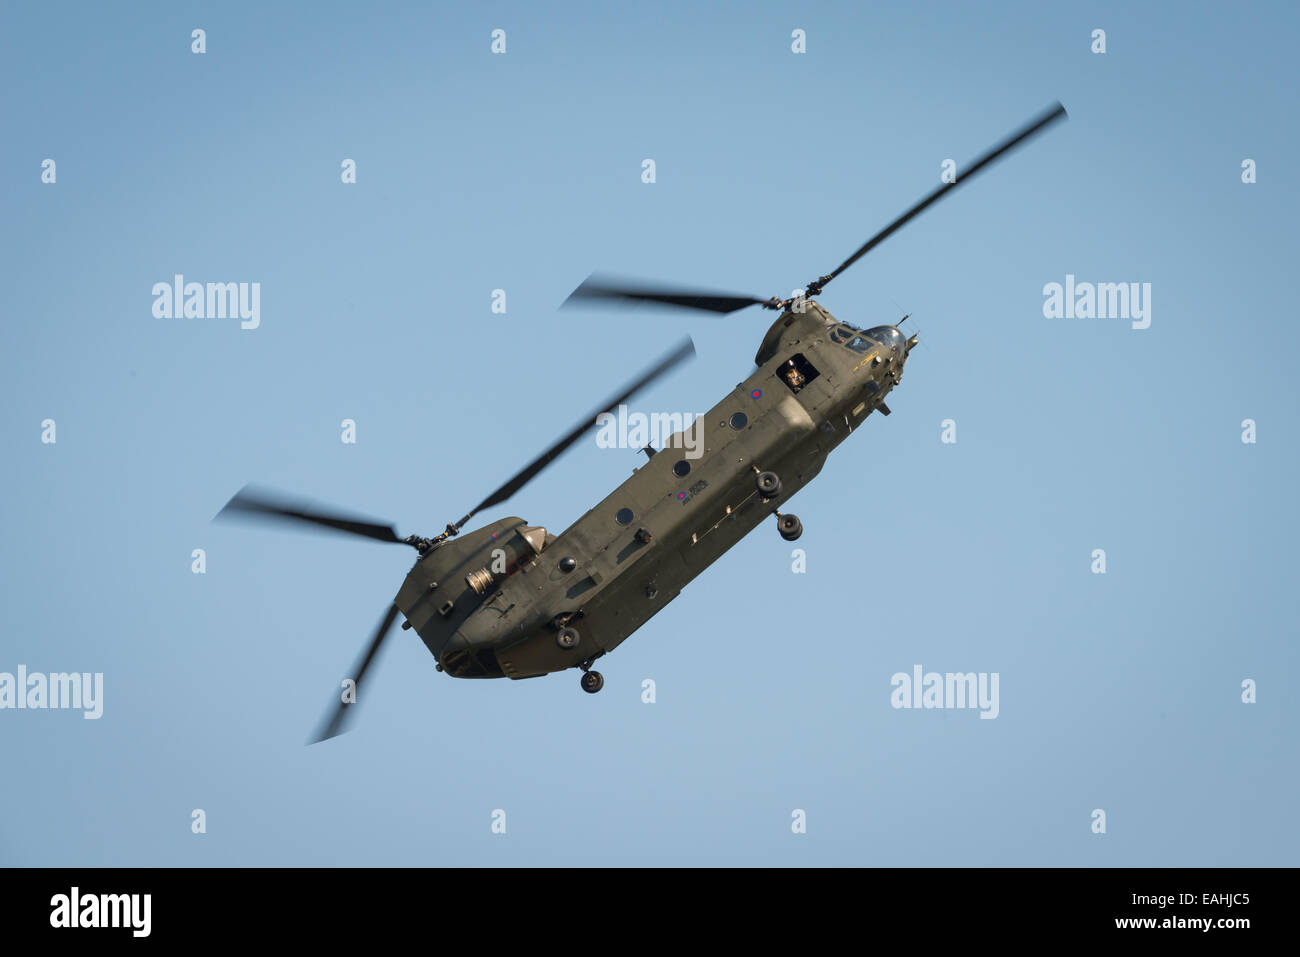 Fairford, UK - 12 juillet 2014 : Un hélicoptère Chinook de la RAF afficher au Royal International Air Tattoo. Banque D'Images